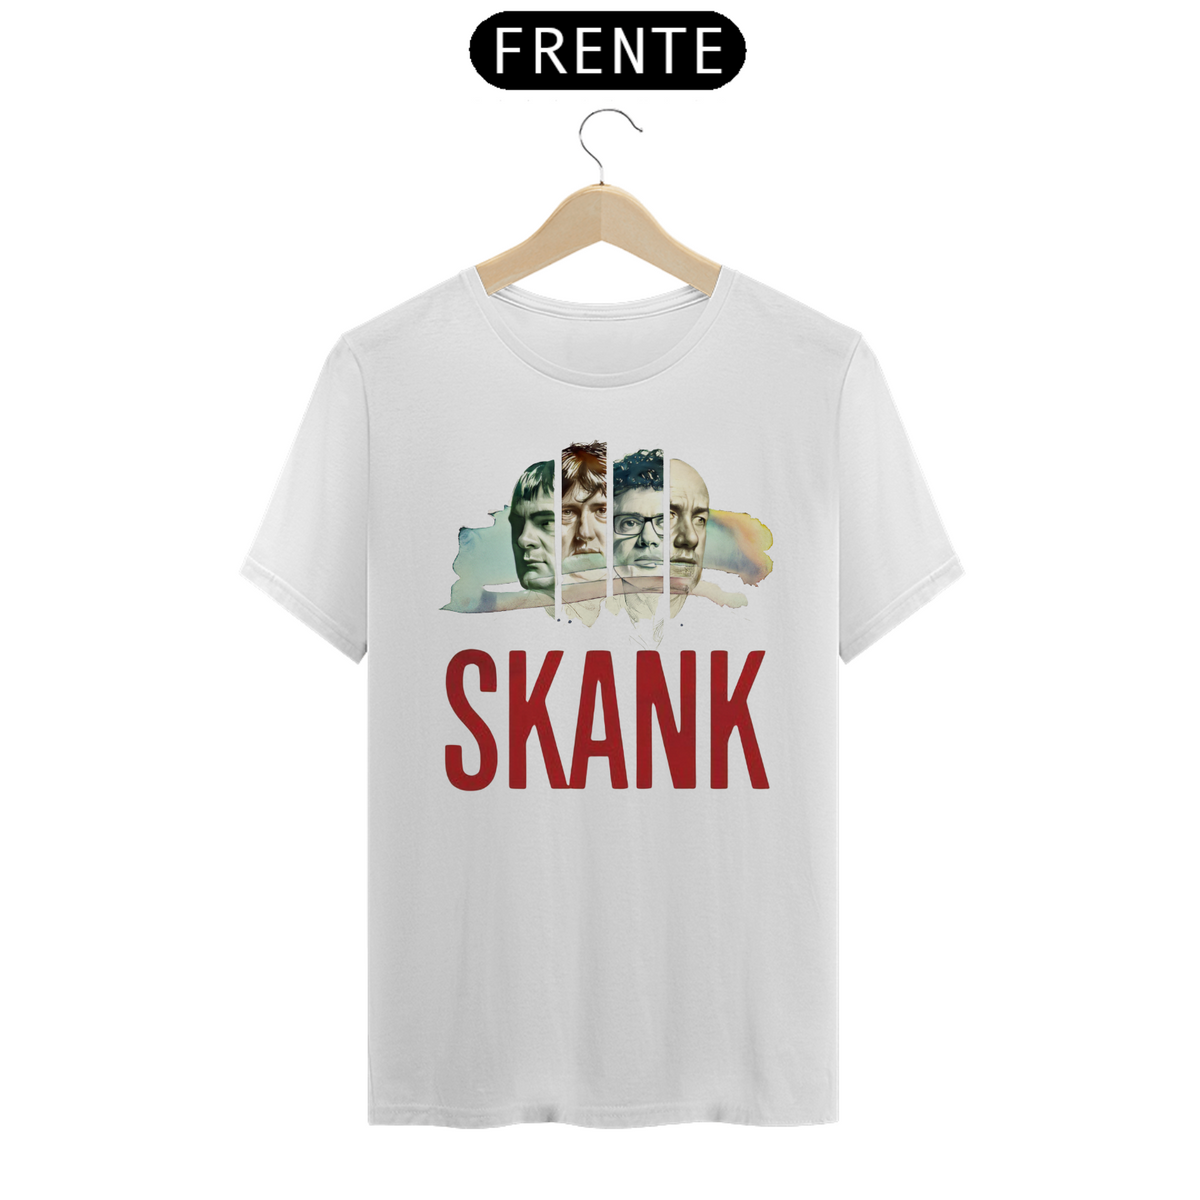 Nome do produto: Skank